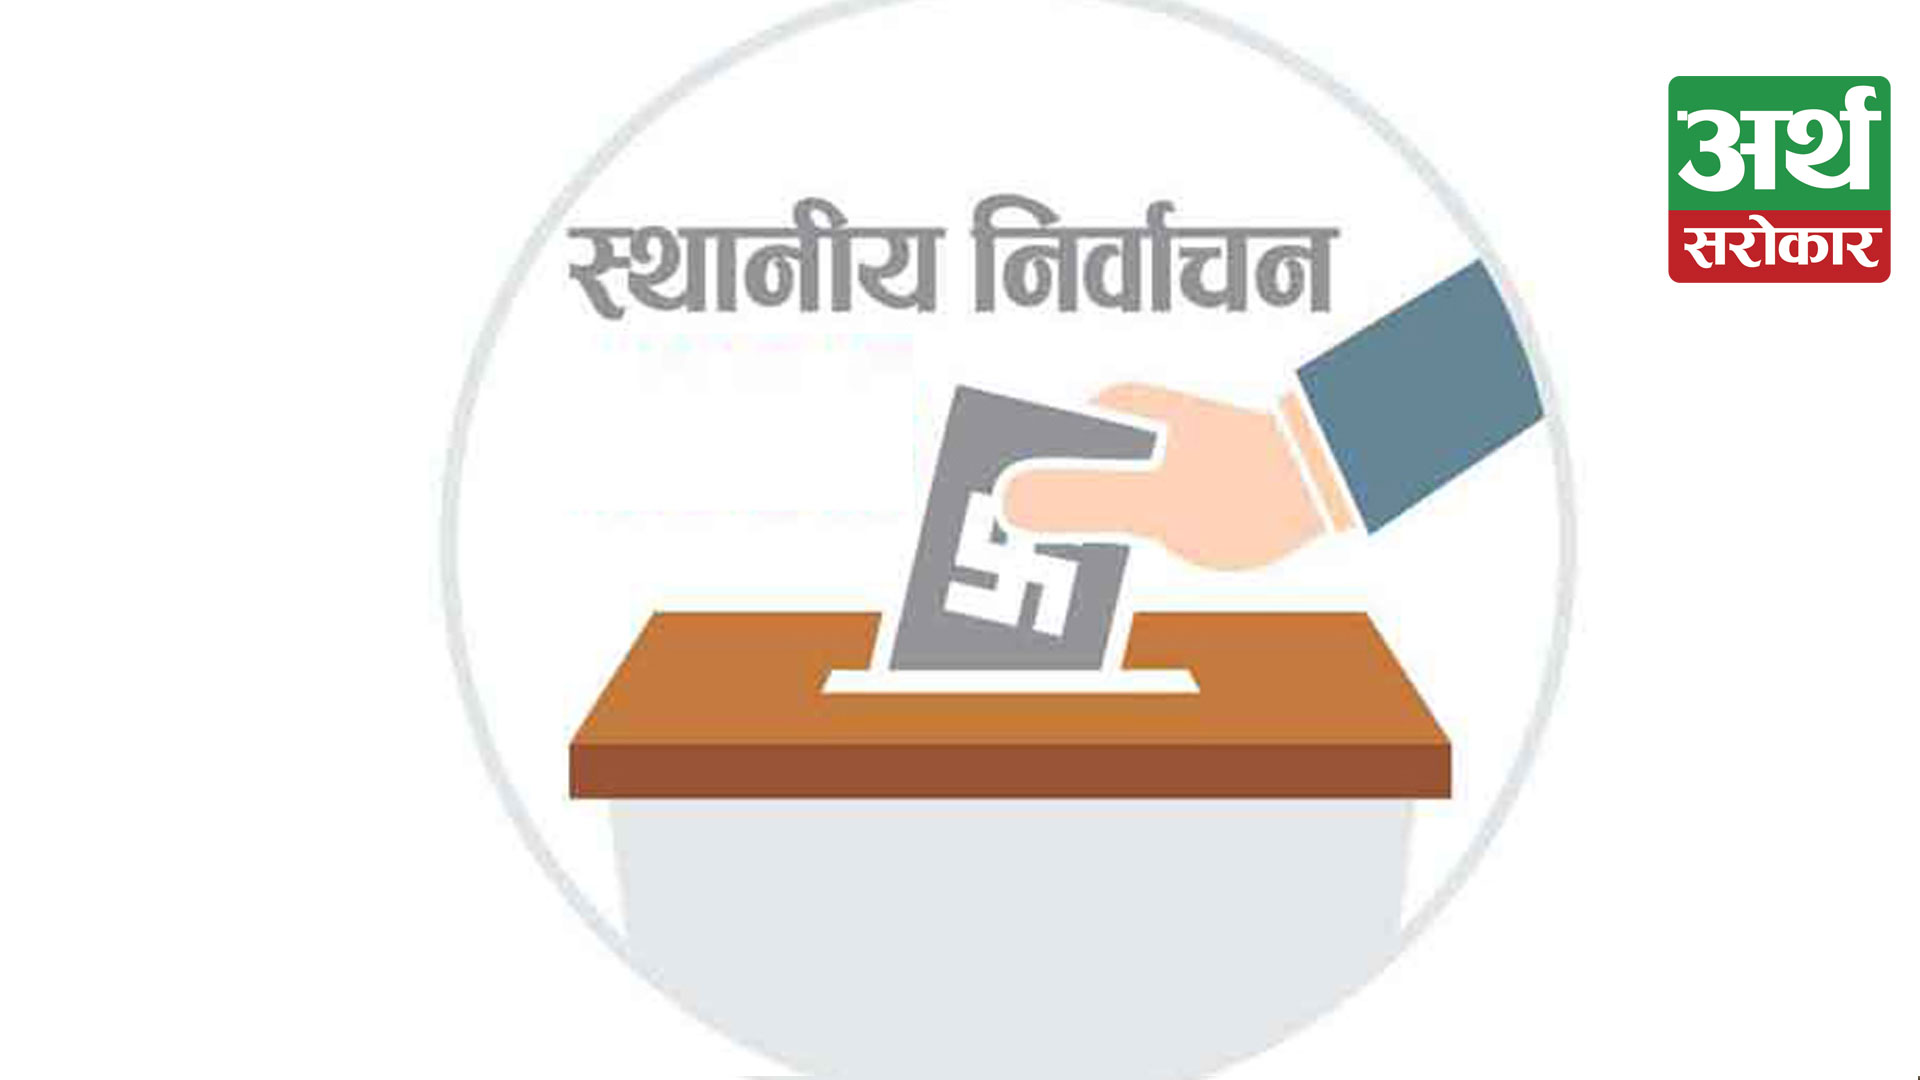 स्थानीय तह निर्वाचन : कञ्चनपुरमा चुनावी तयारी तीव्र